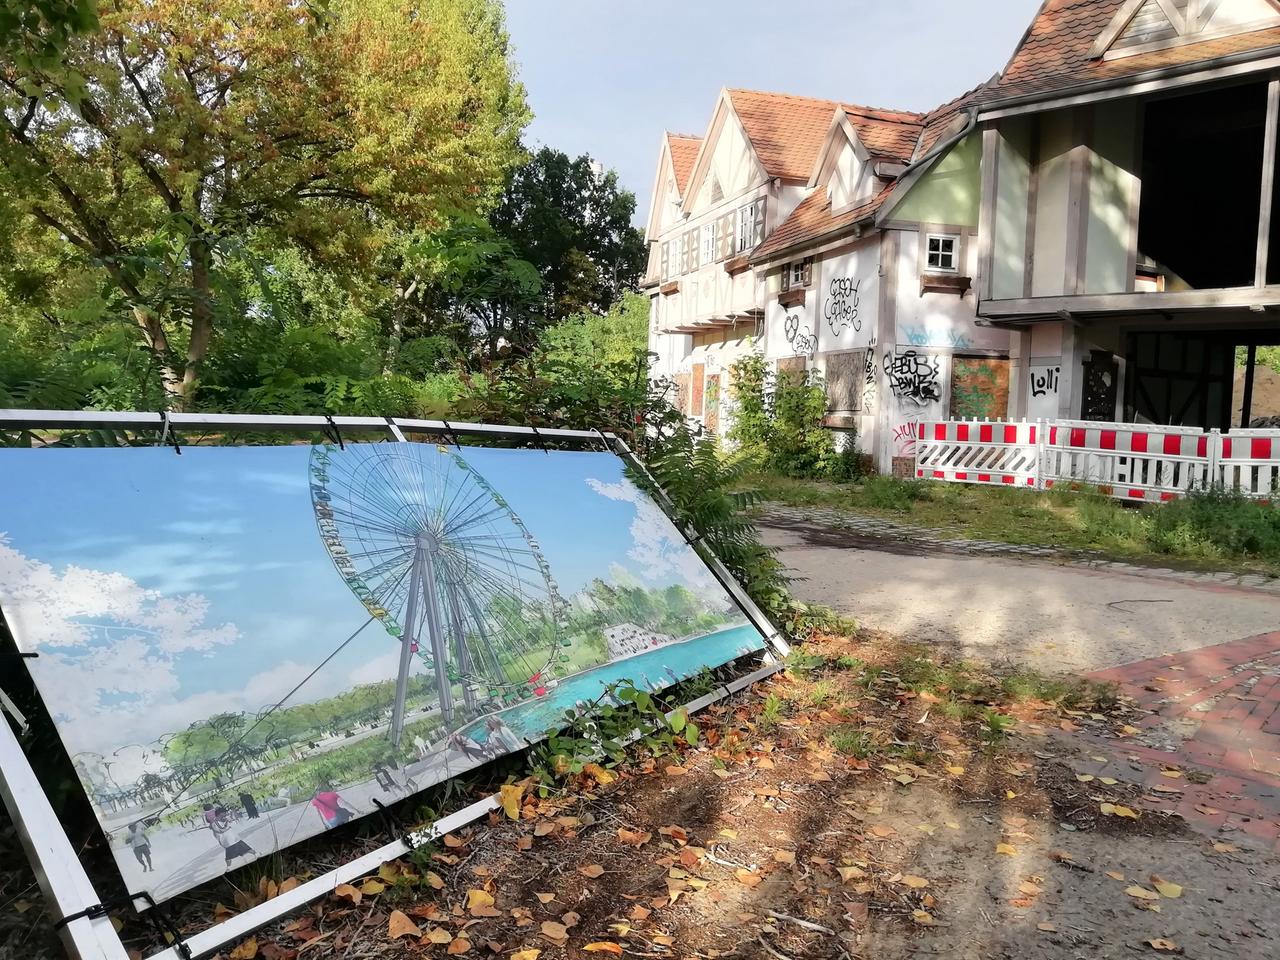 Auf dem Gelände des Spreeparks ist eine Illustration aufgestellt im Querformat in einem Rahmen gespannt und aufgestellt. Im Hintergrund sind Bäume und Häuser auf dem Gelände zu sehen, bei einem Haus fehlen ganze Wände.